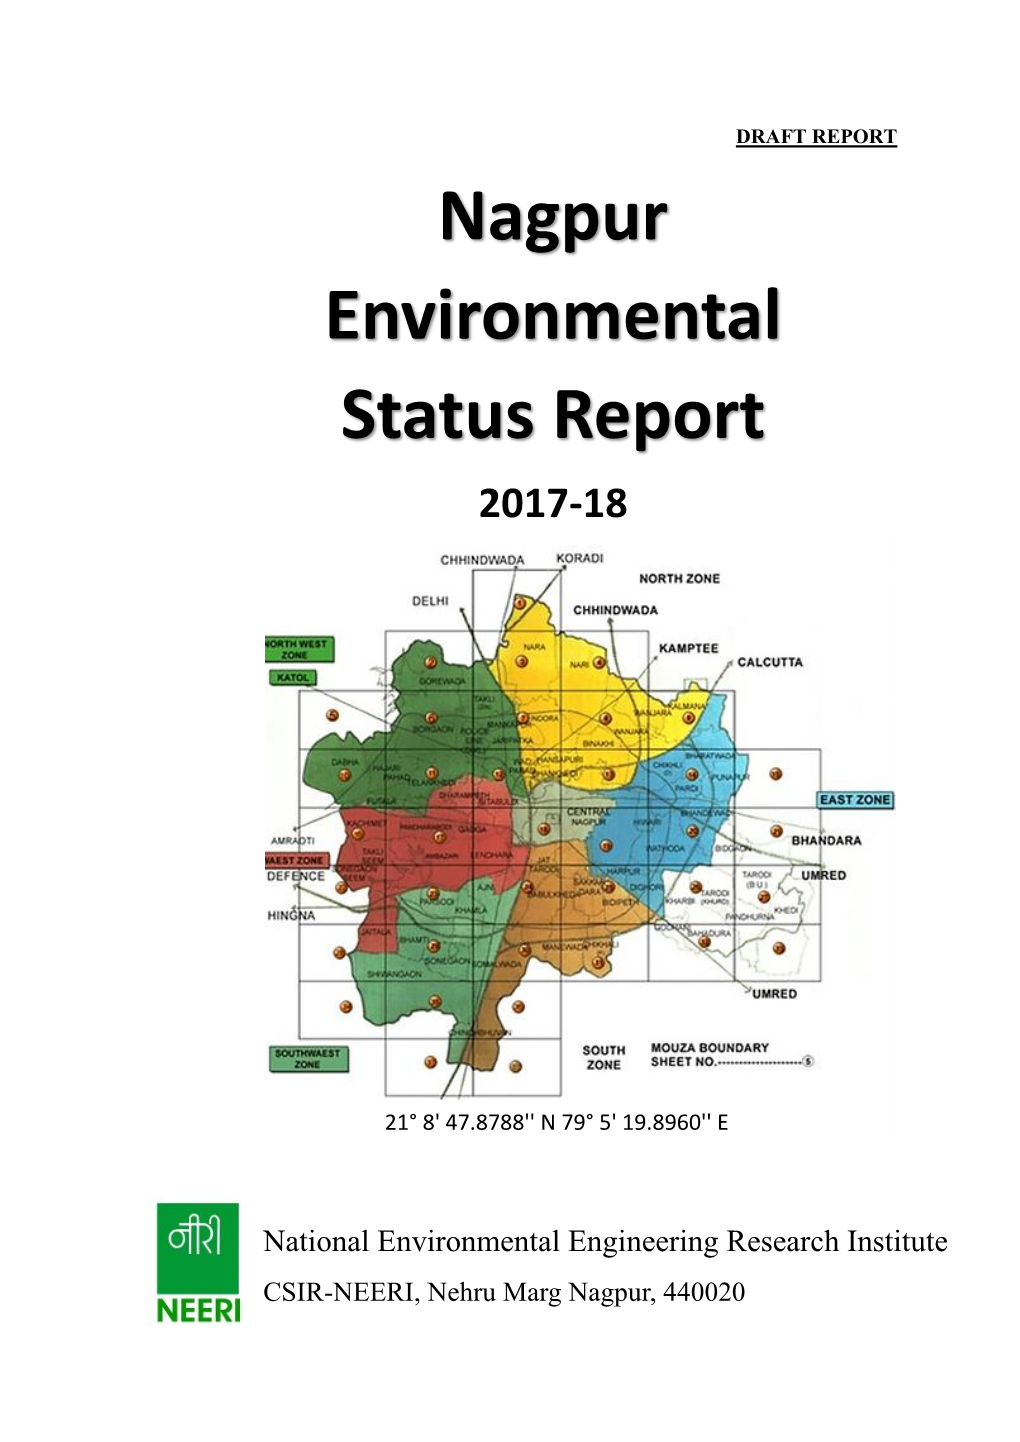 Environmental Status Report Nagpur- 2017-18